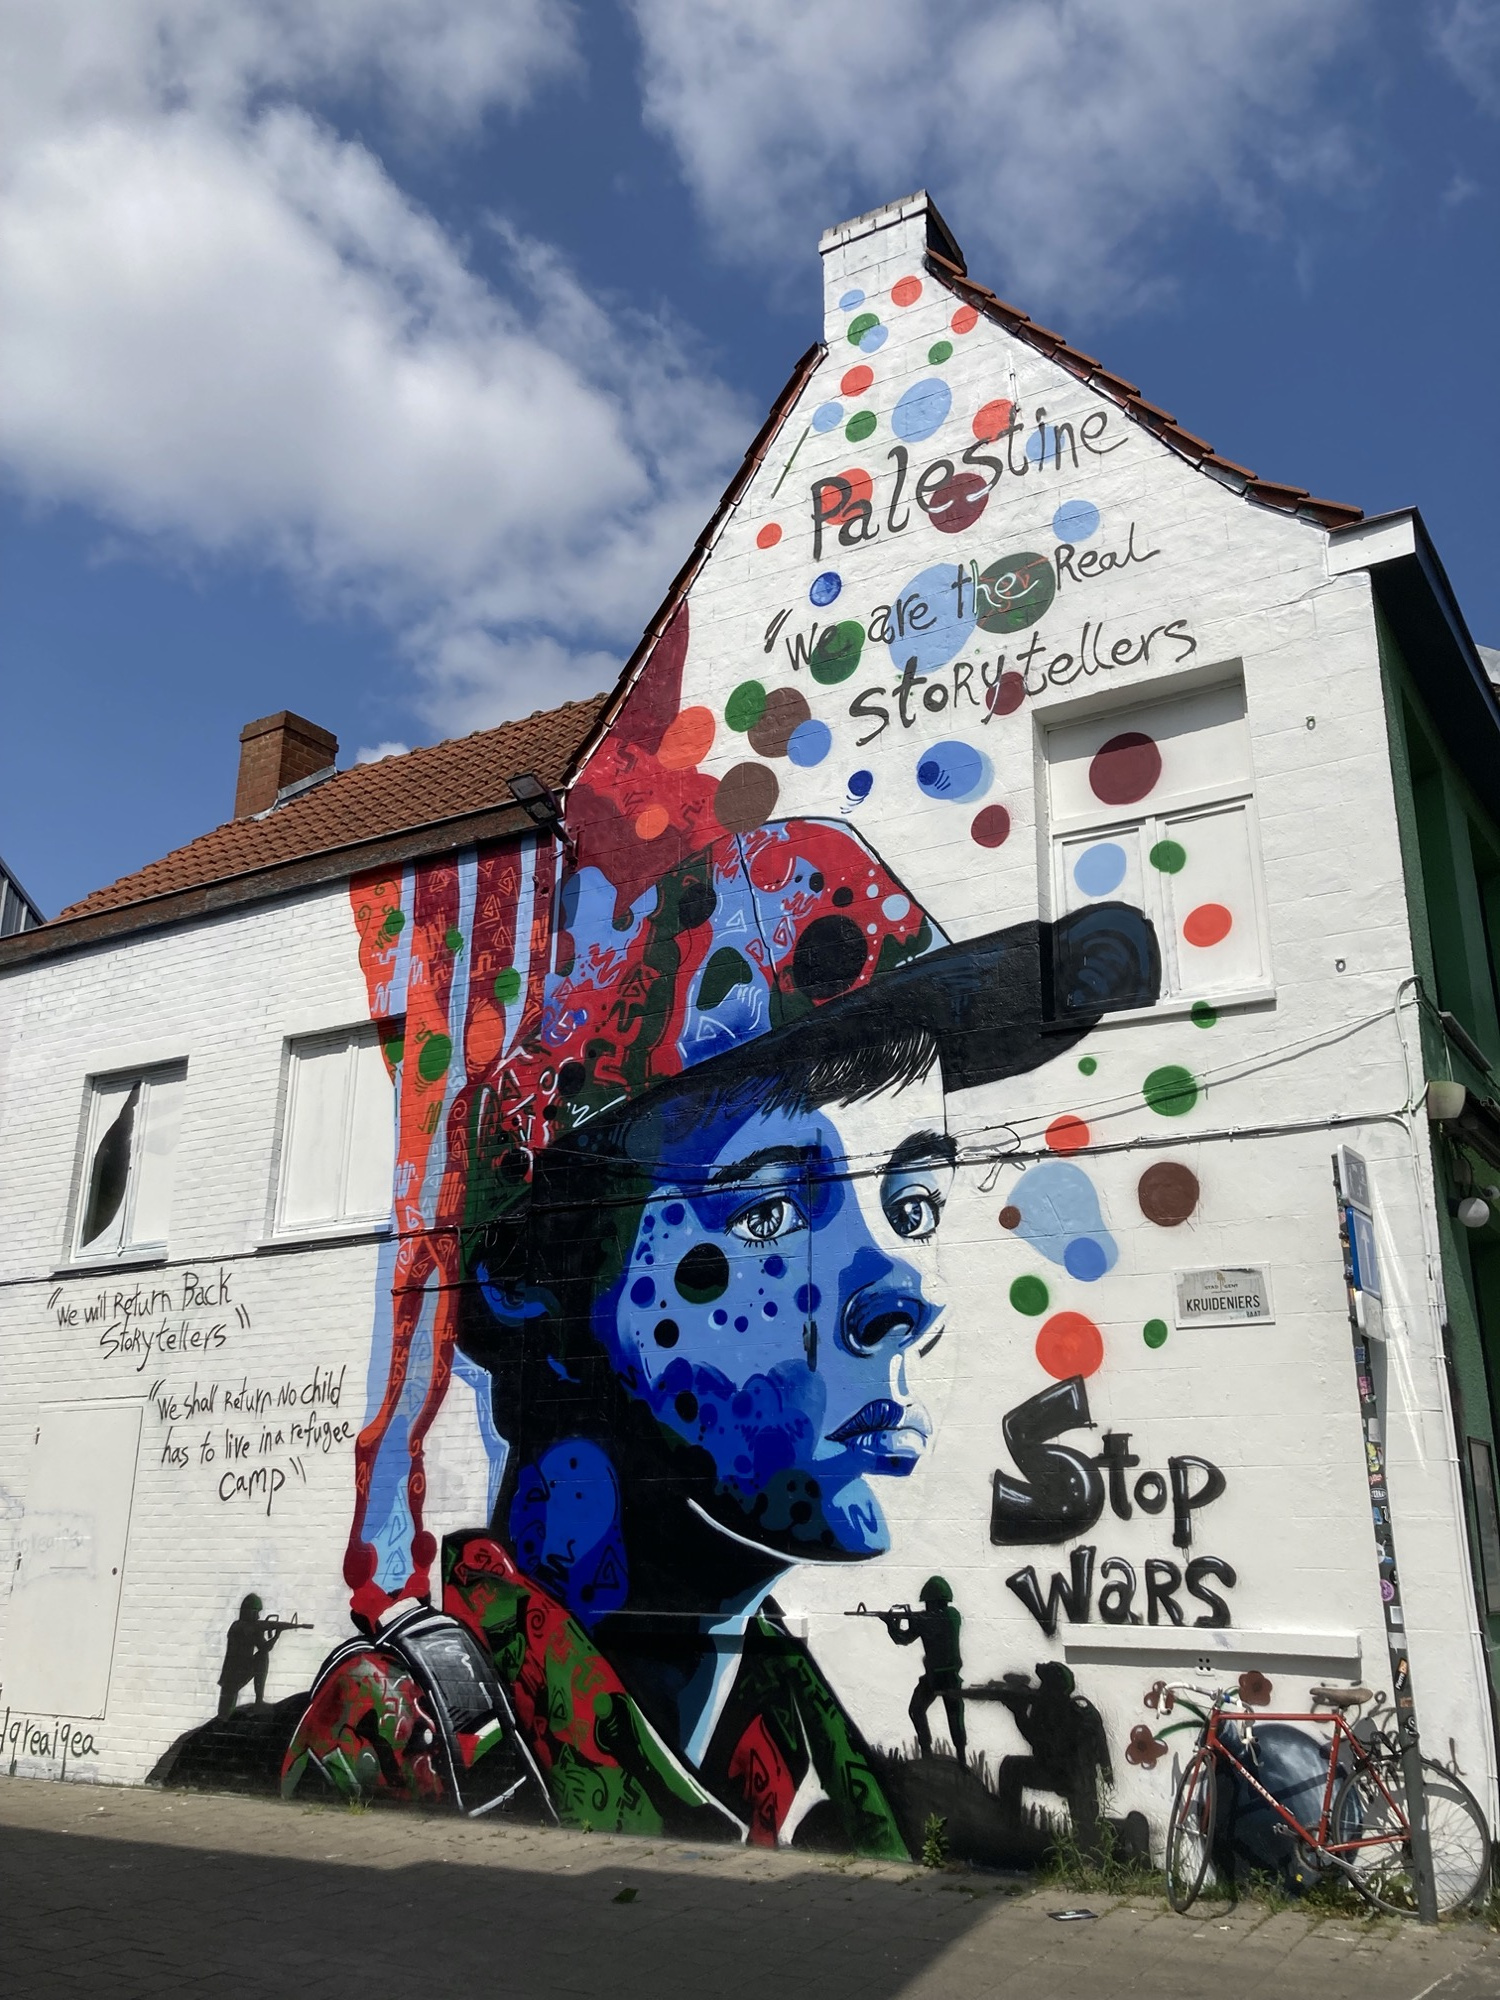 Graffiti an der weißen Wand eines Hauses, ein Porträt einer Person mit Schirmkappe, die von kleinen Soldaten mit Waffen bedroht wird, Text drumherum: „Palestine“, „we are the real storytellers“, „stop wars“